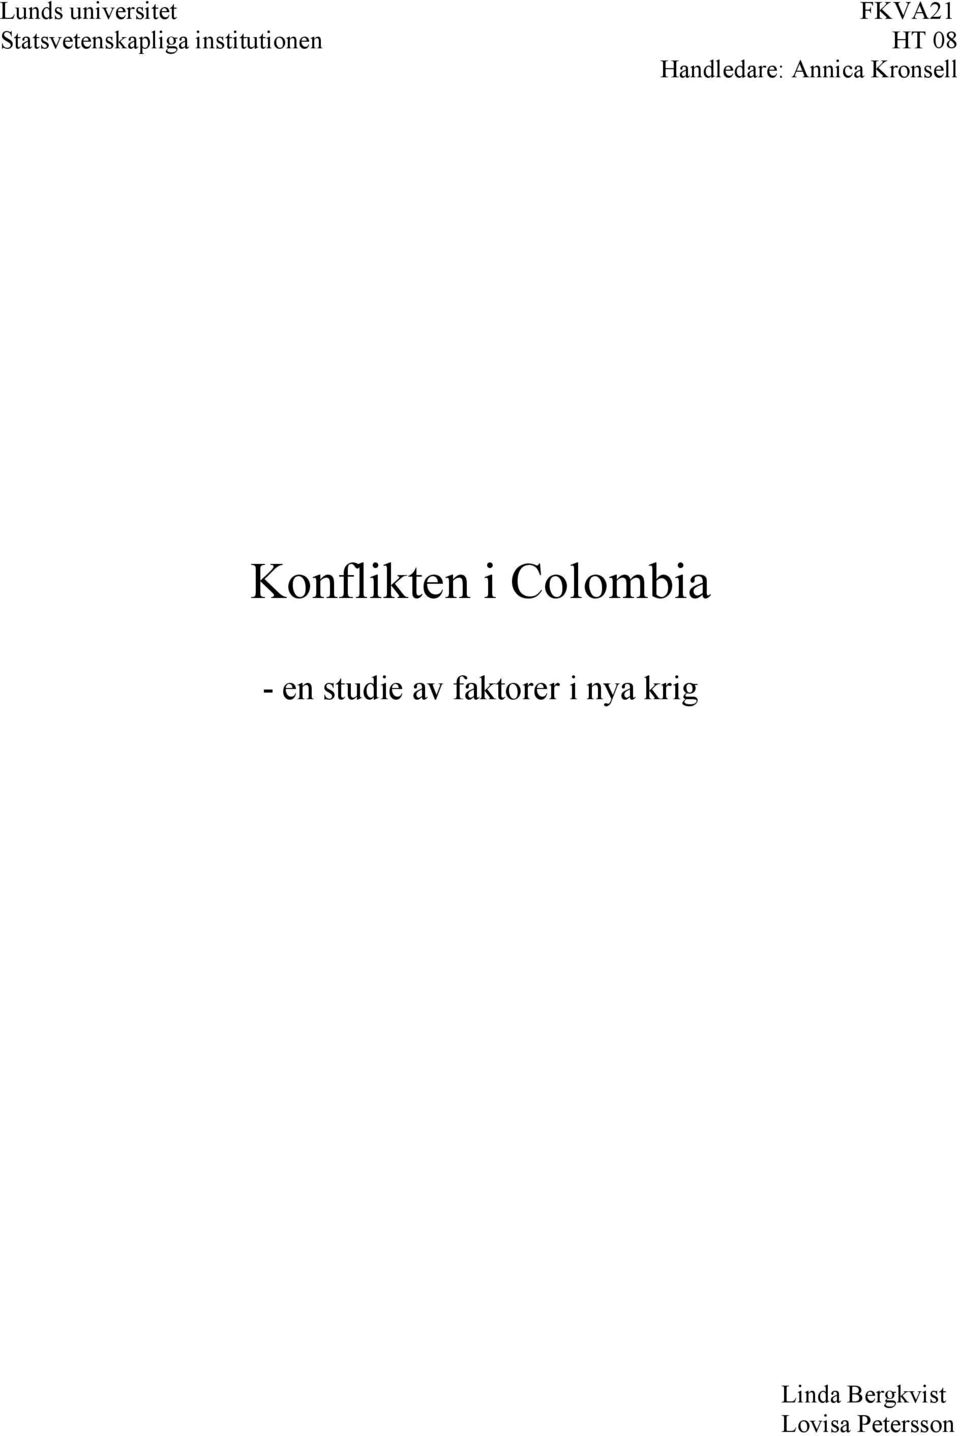 Kronsell Konflikten i Colombia - en studie av